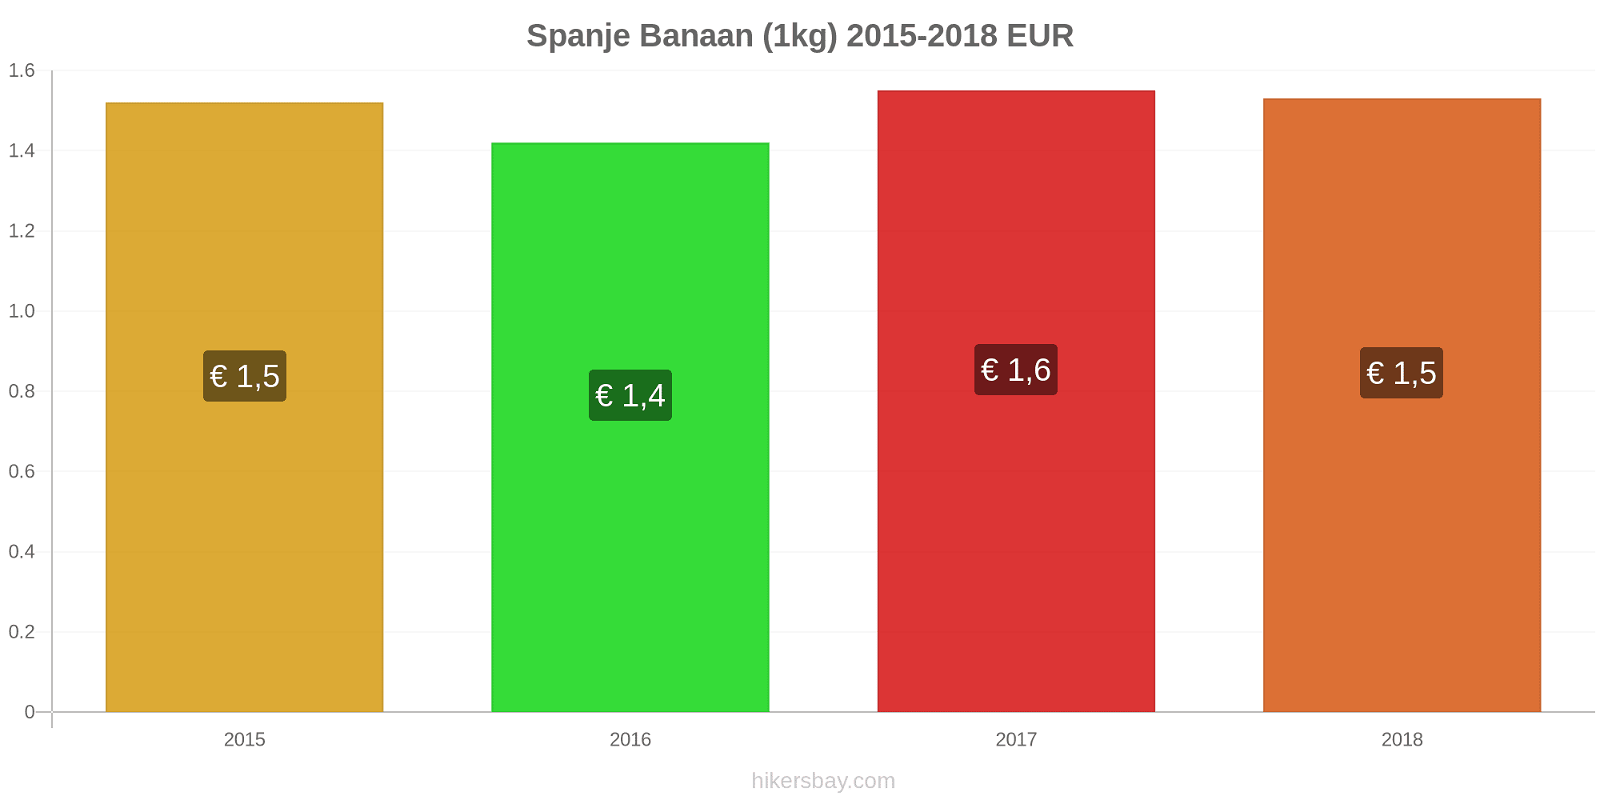 Spanje prijswijzigingen Bananen (1kg) hikersbay.com